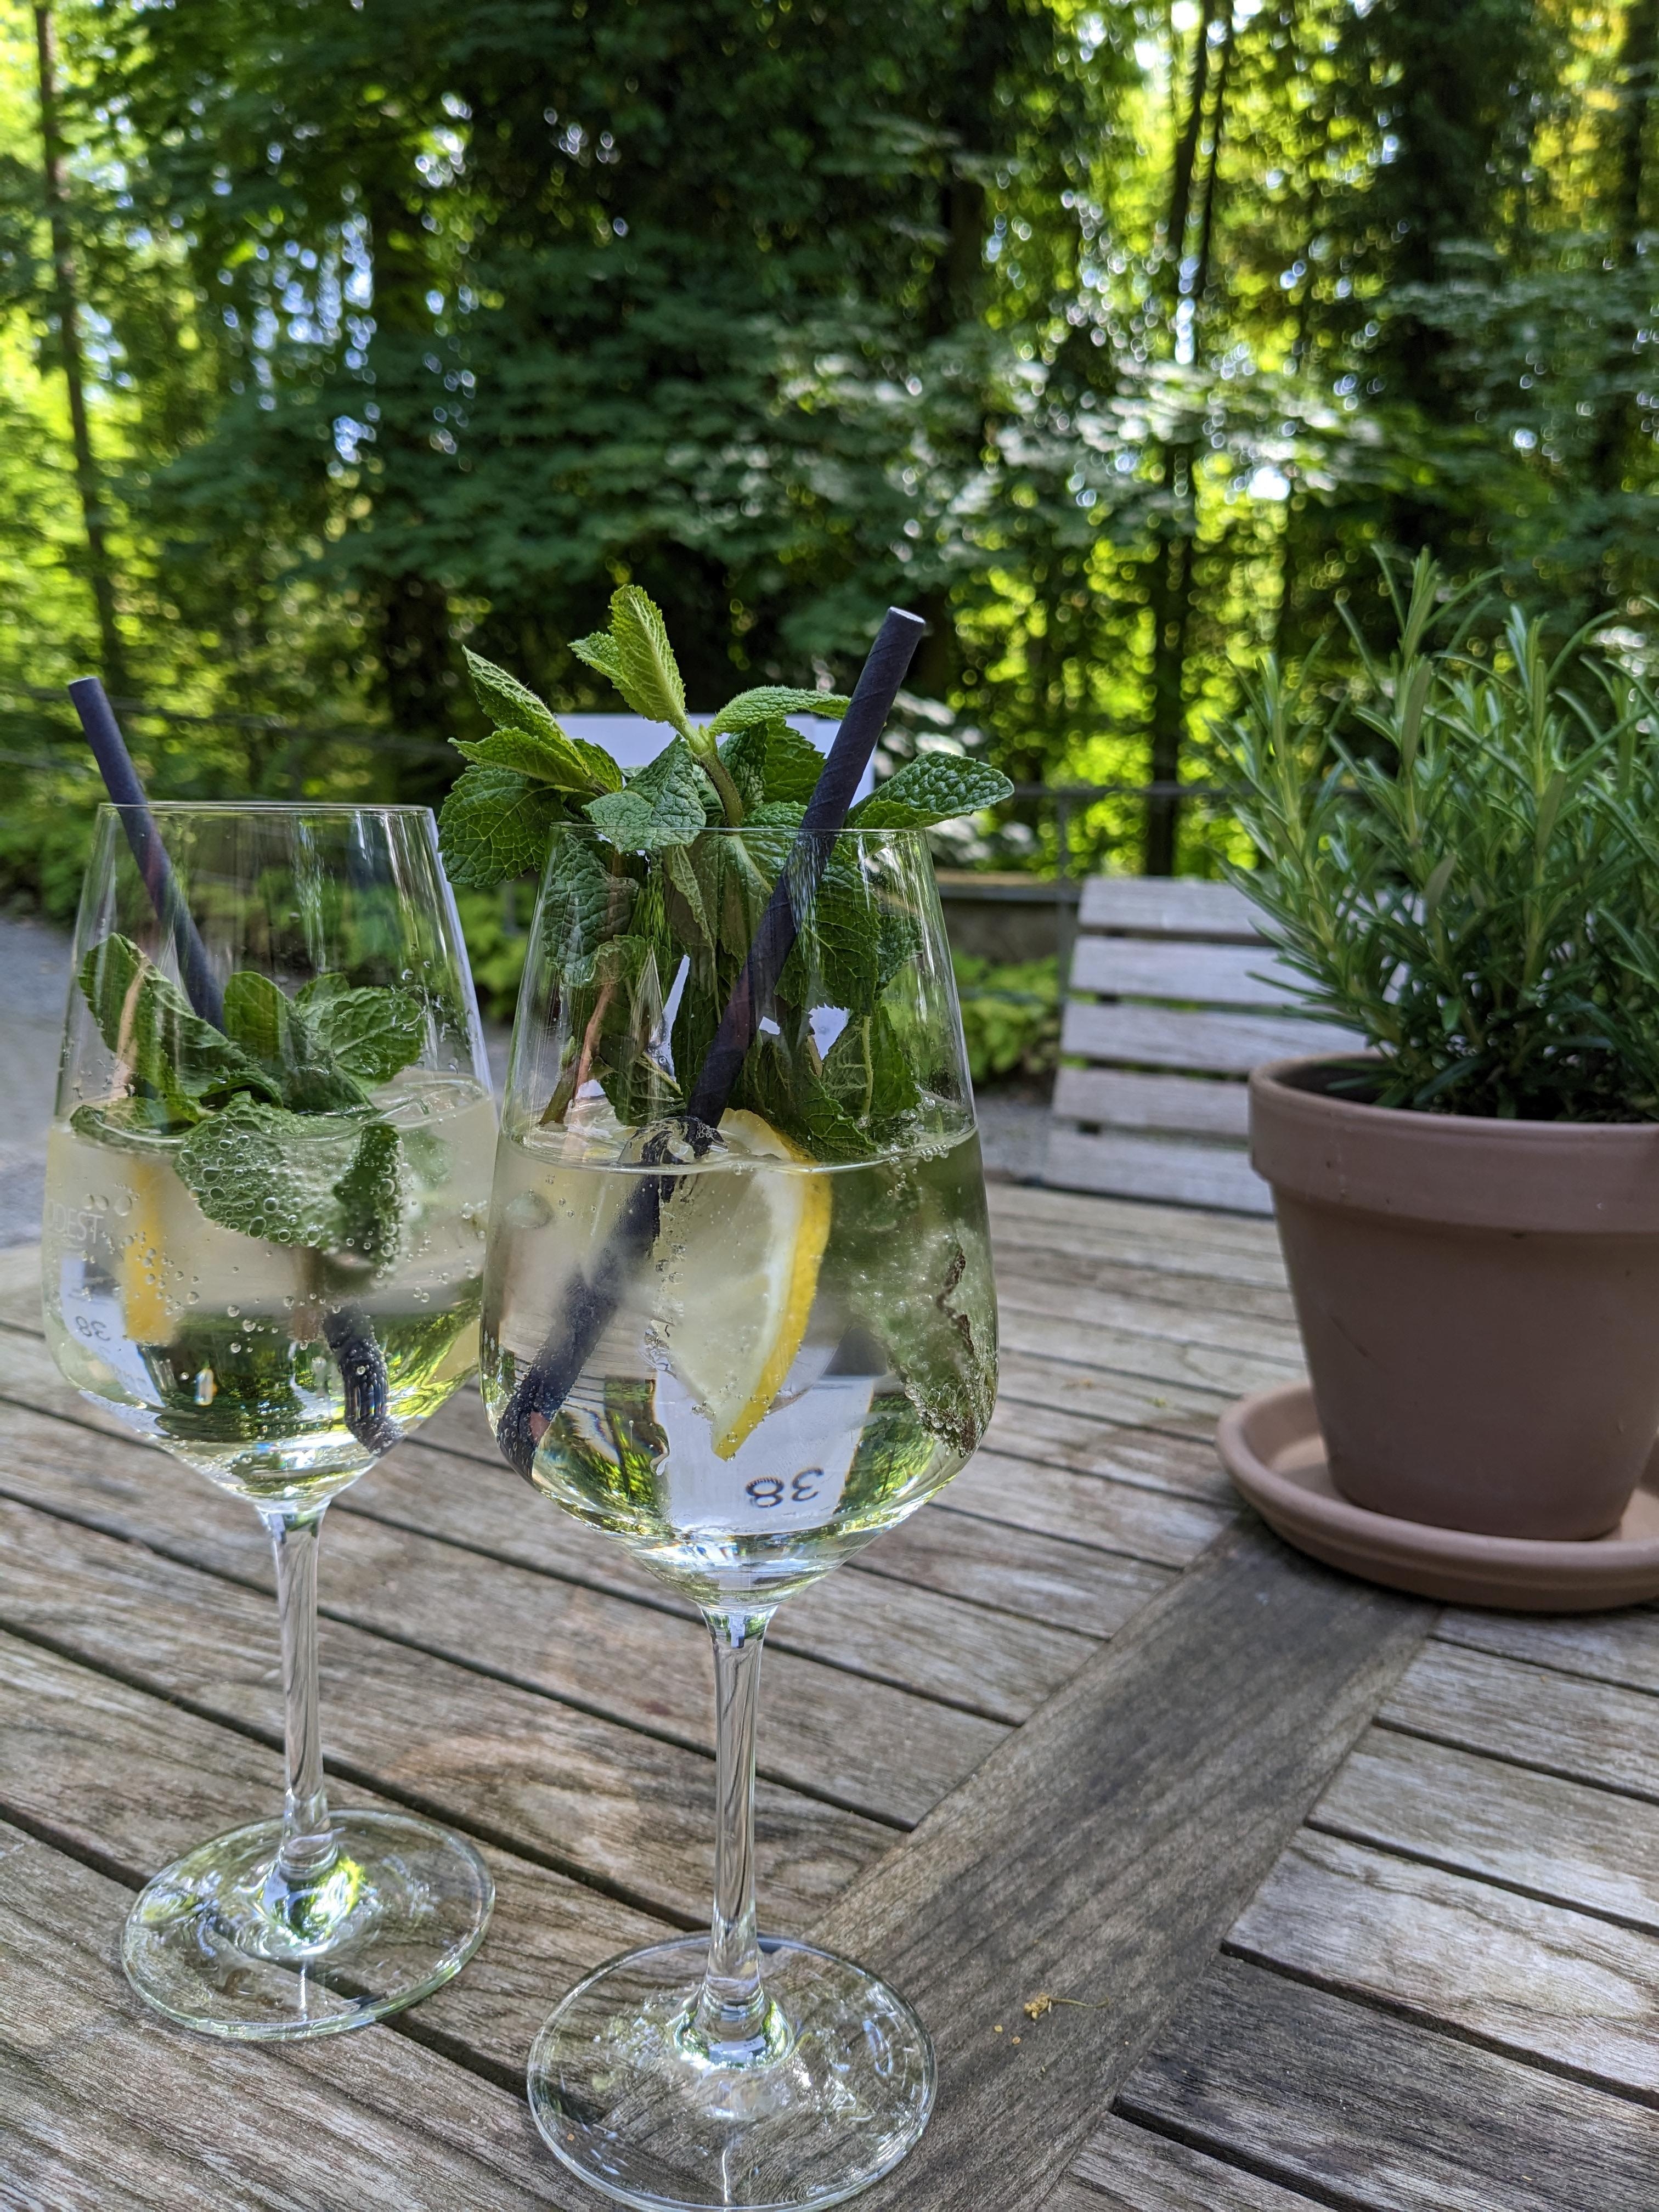 Cocktail's trinken und das tolle Wetter genießen 🔆
#cocktail #sommer #sonne #drinks